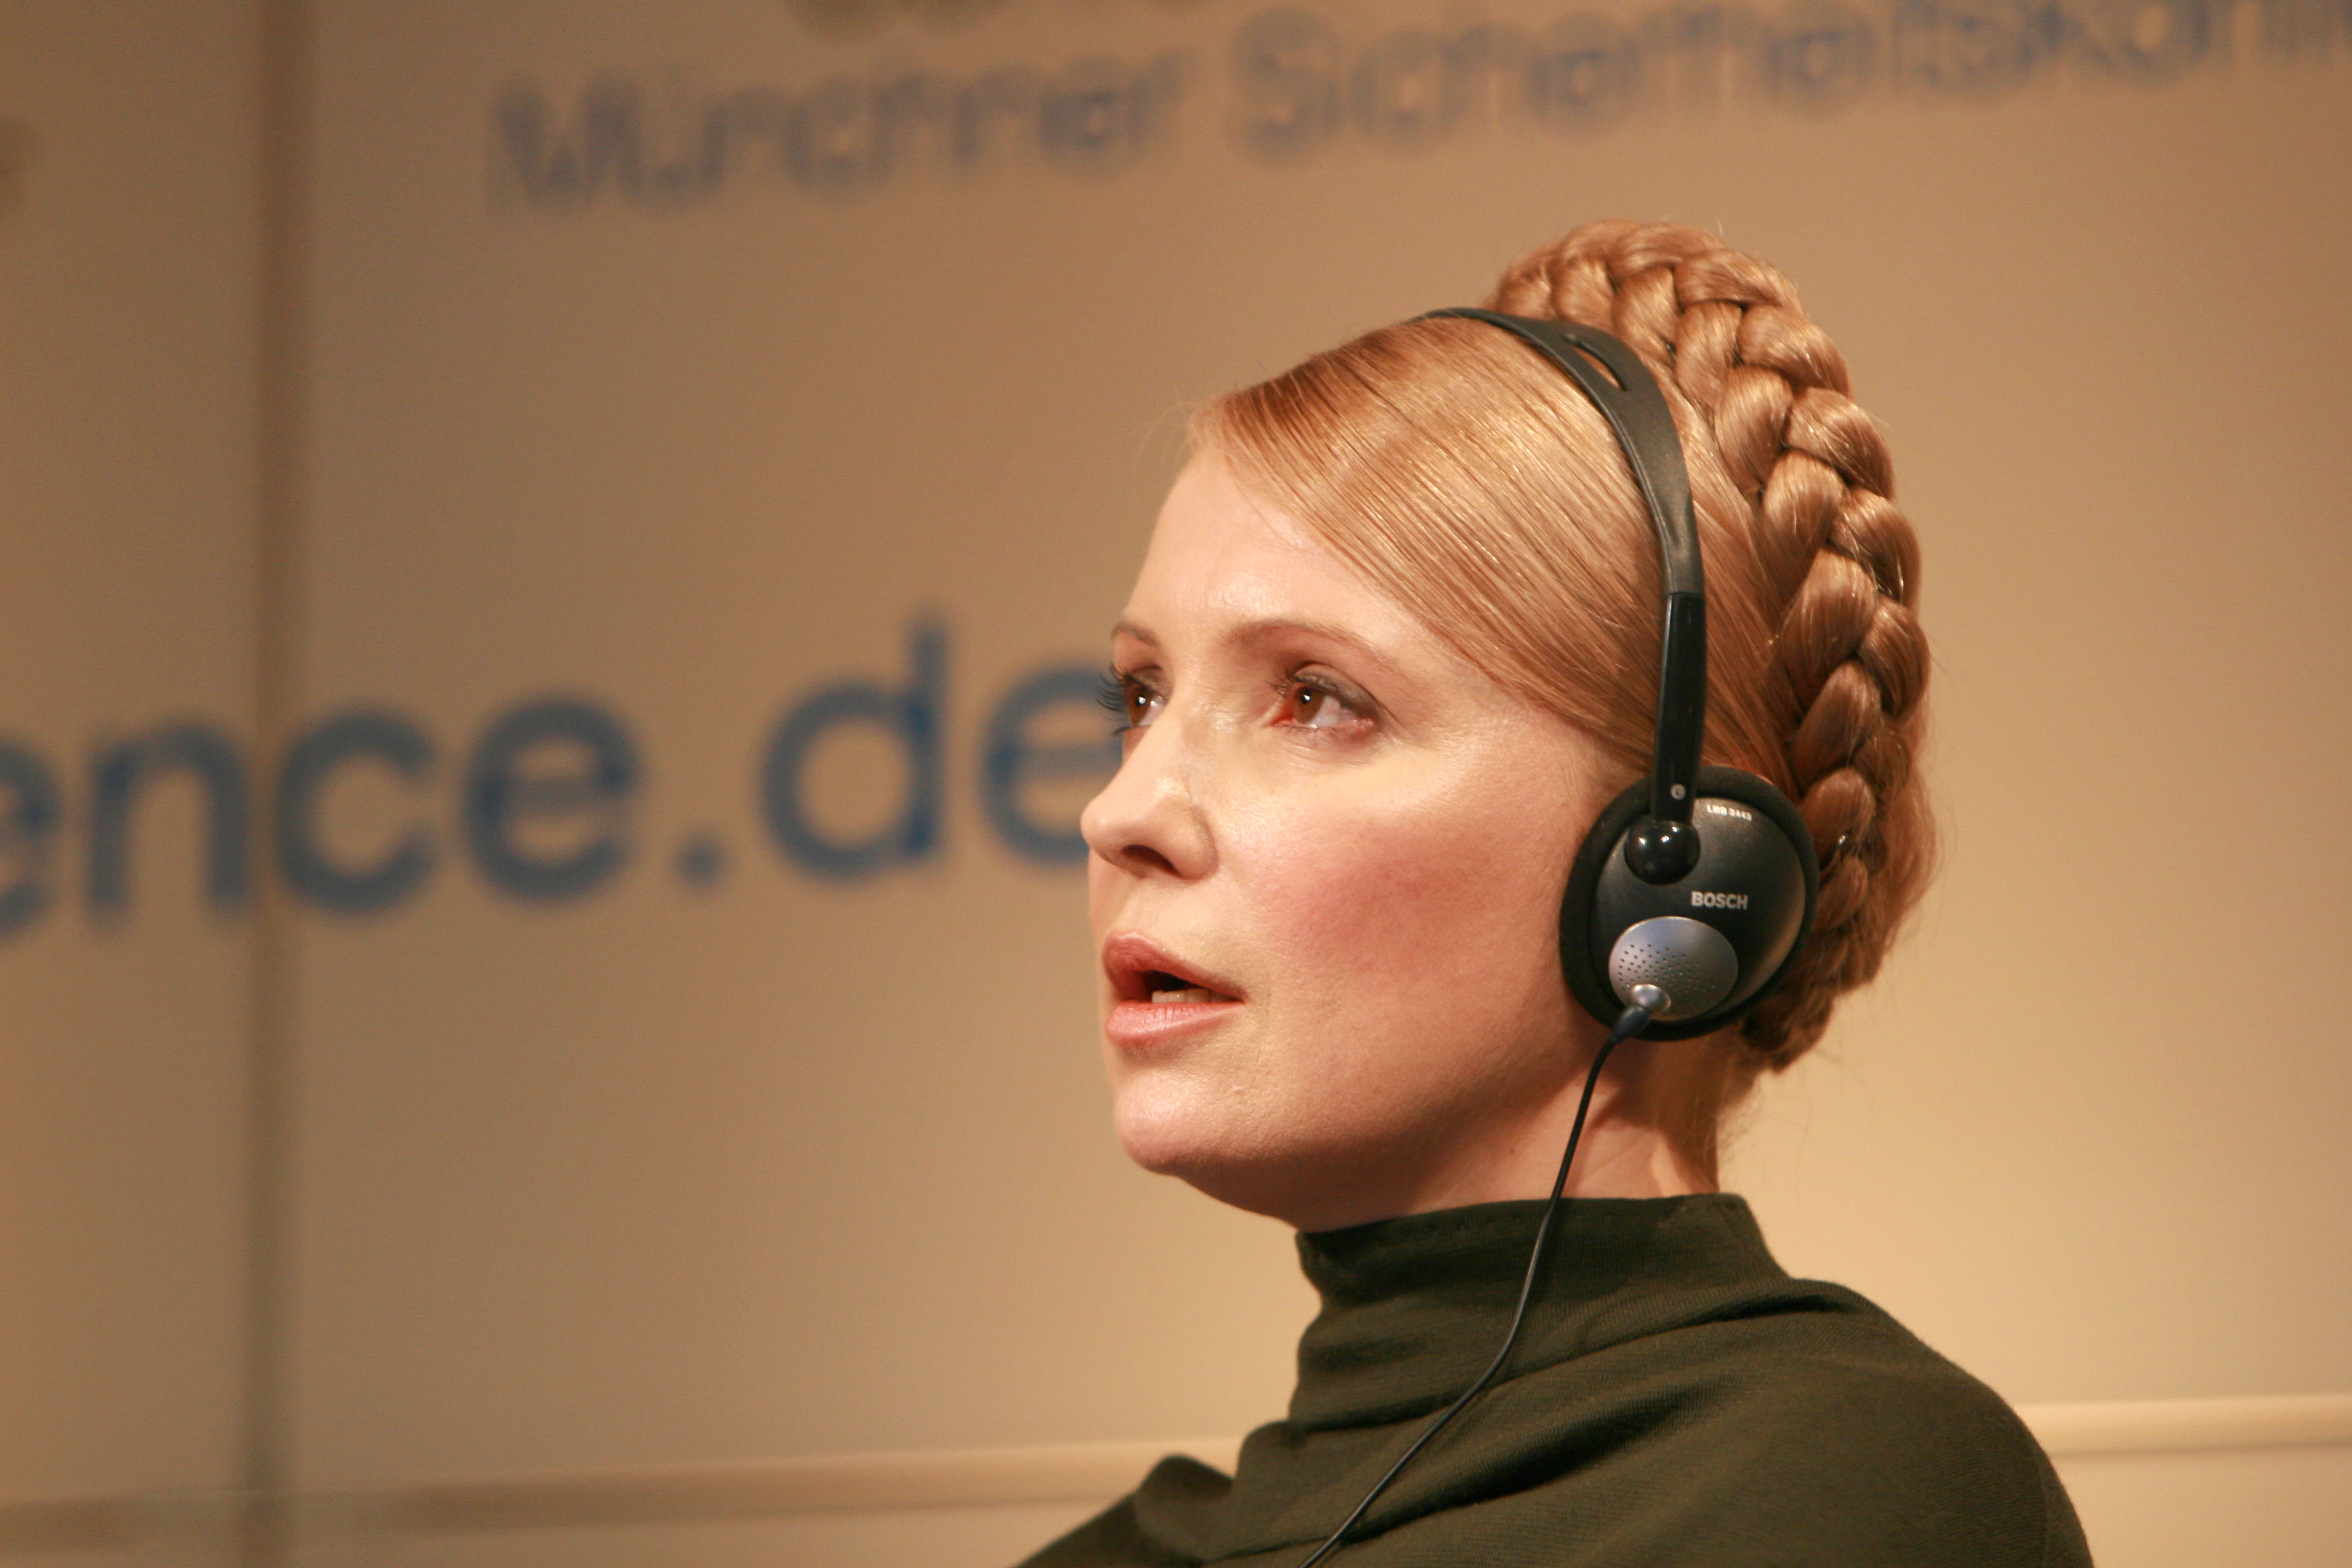 Tymoshenko